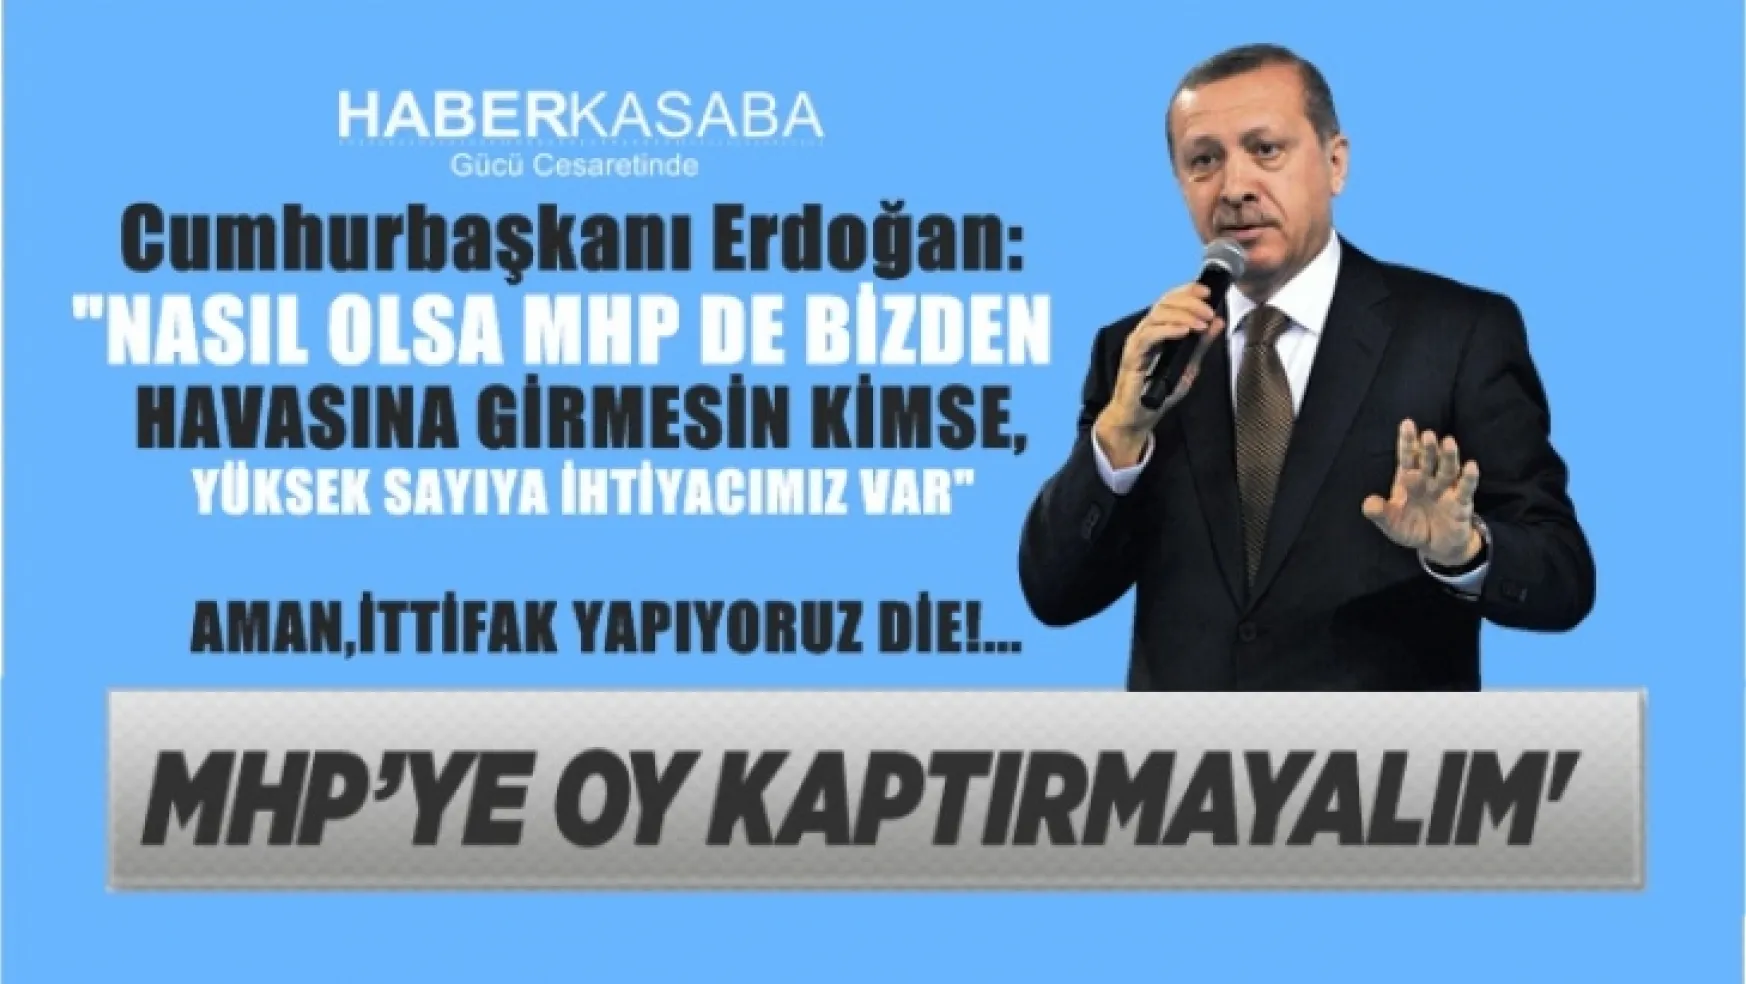 Recep Tayyip Erdoğan, 'Aman, ittifak yapıyoruz diye MHP'ye oy kaptırmayalım'